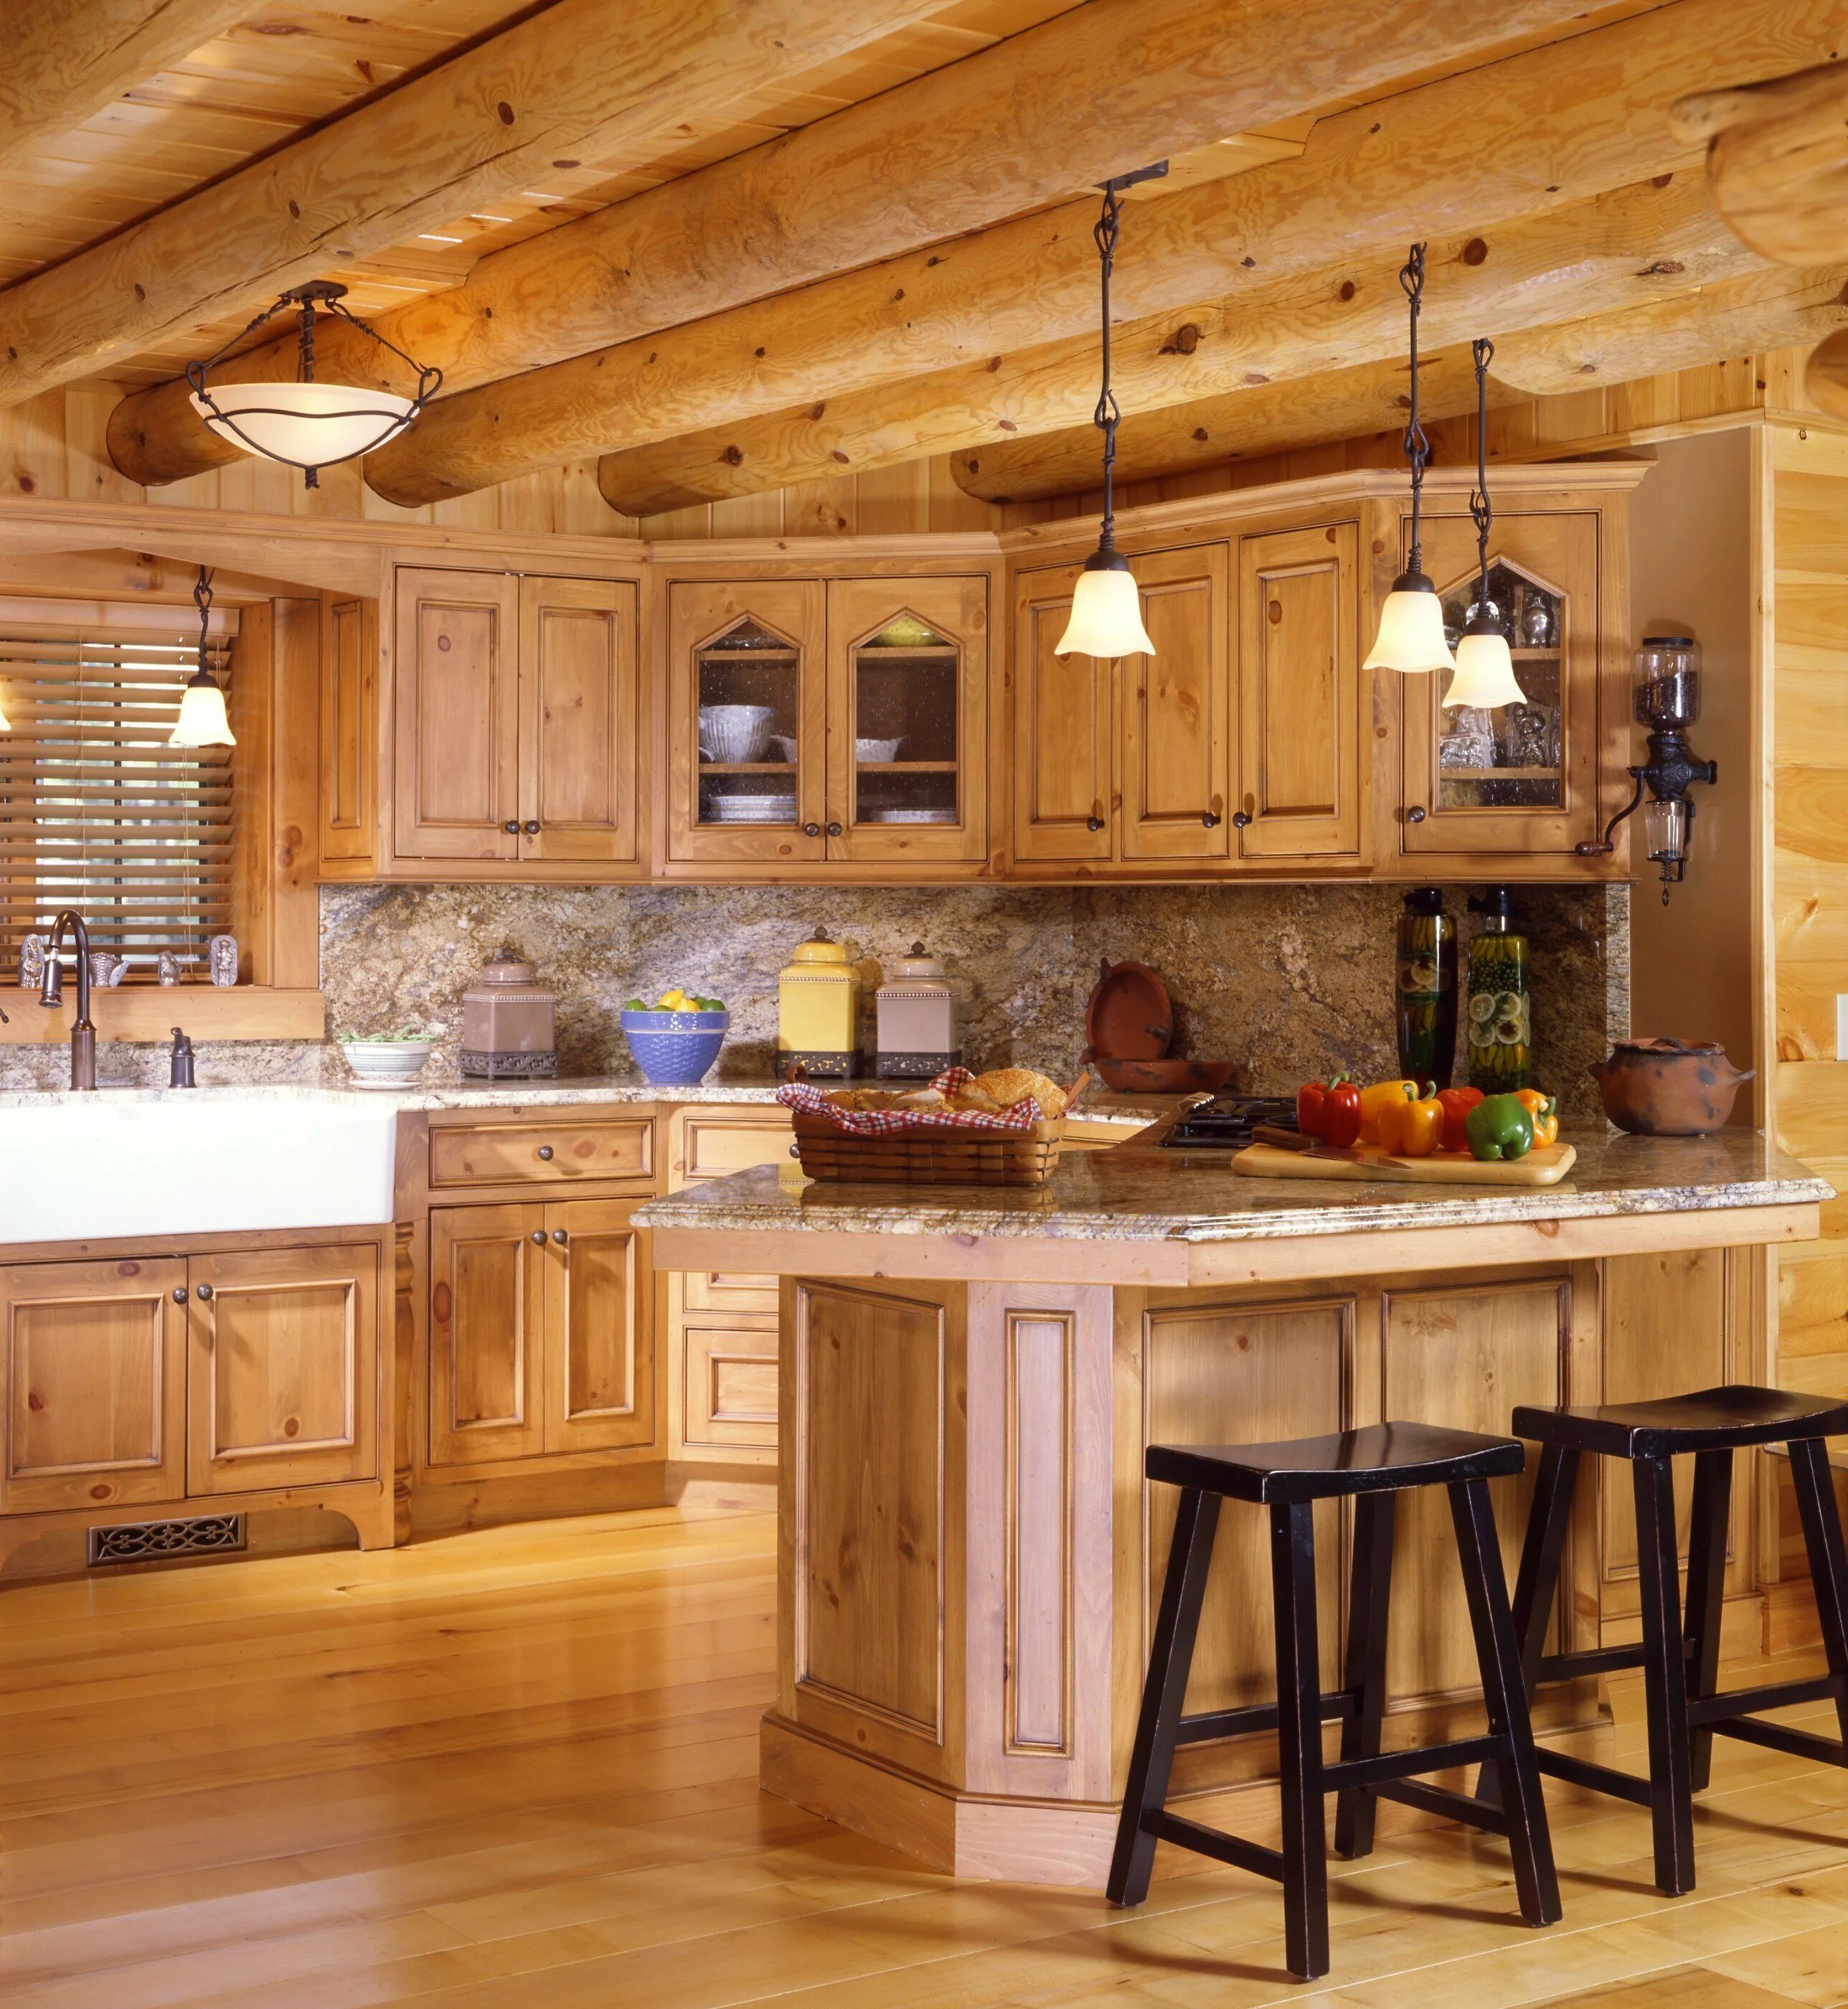 Кухня в деревянном доме. Кухни в деревянноммдоме. Кухня в деревянном стиле. Красивая кухня в деревянном доме. Рубленные кухни